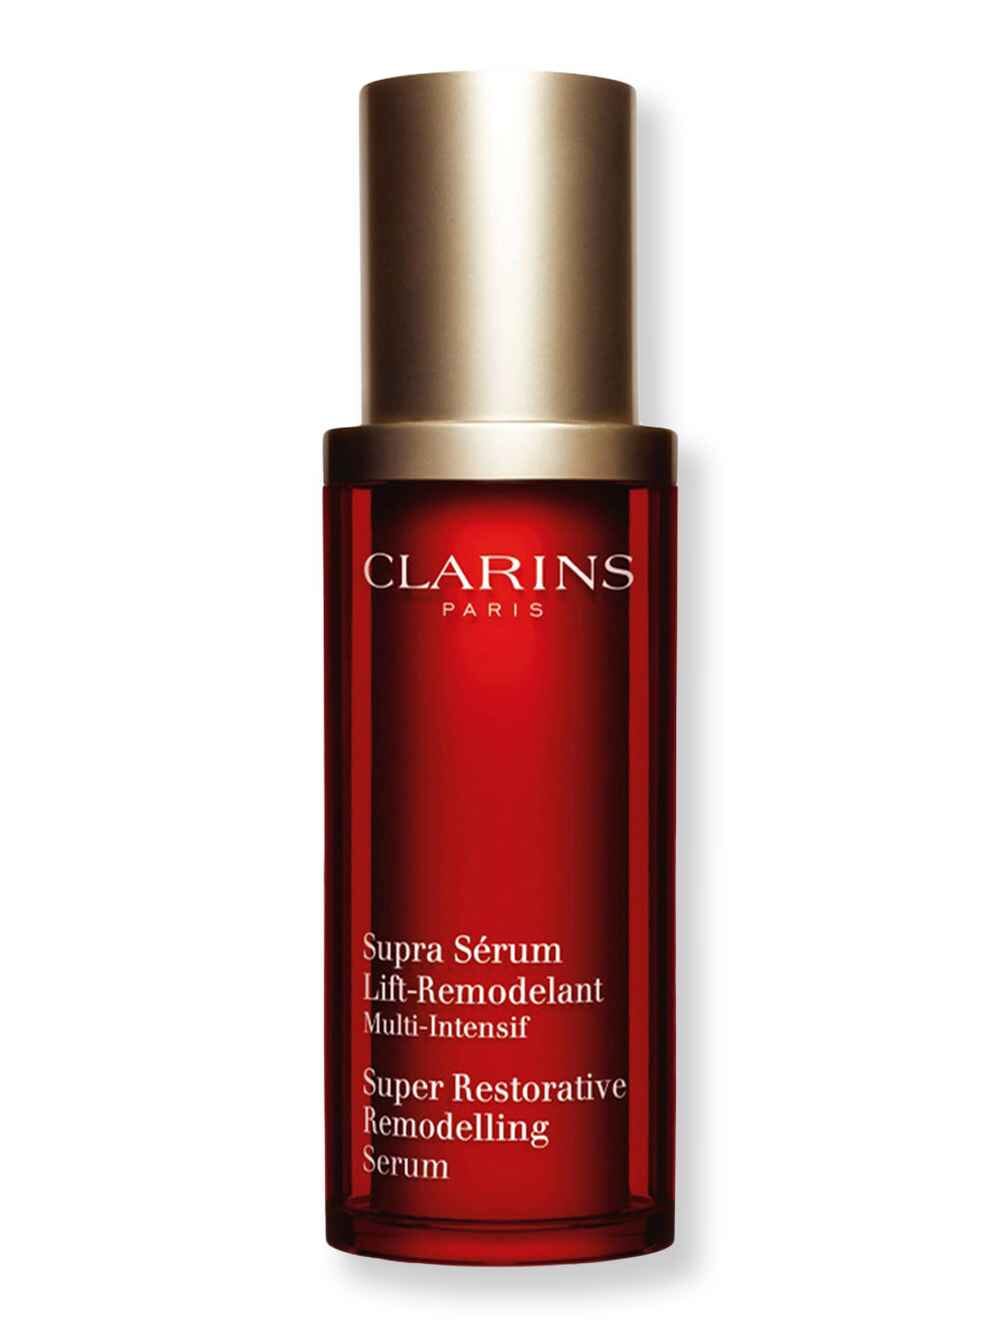 Clarins Clarins Super Restorative Remodelling Serum 1 oz Serums 